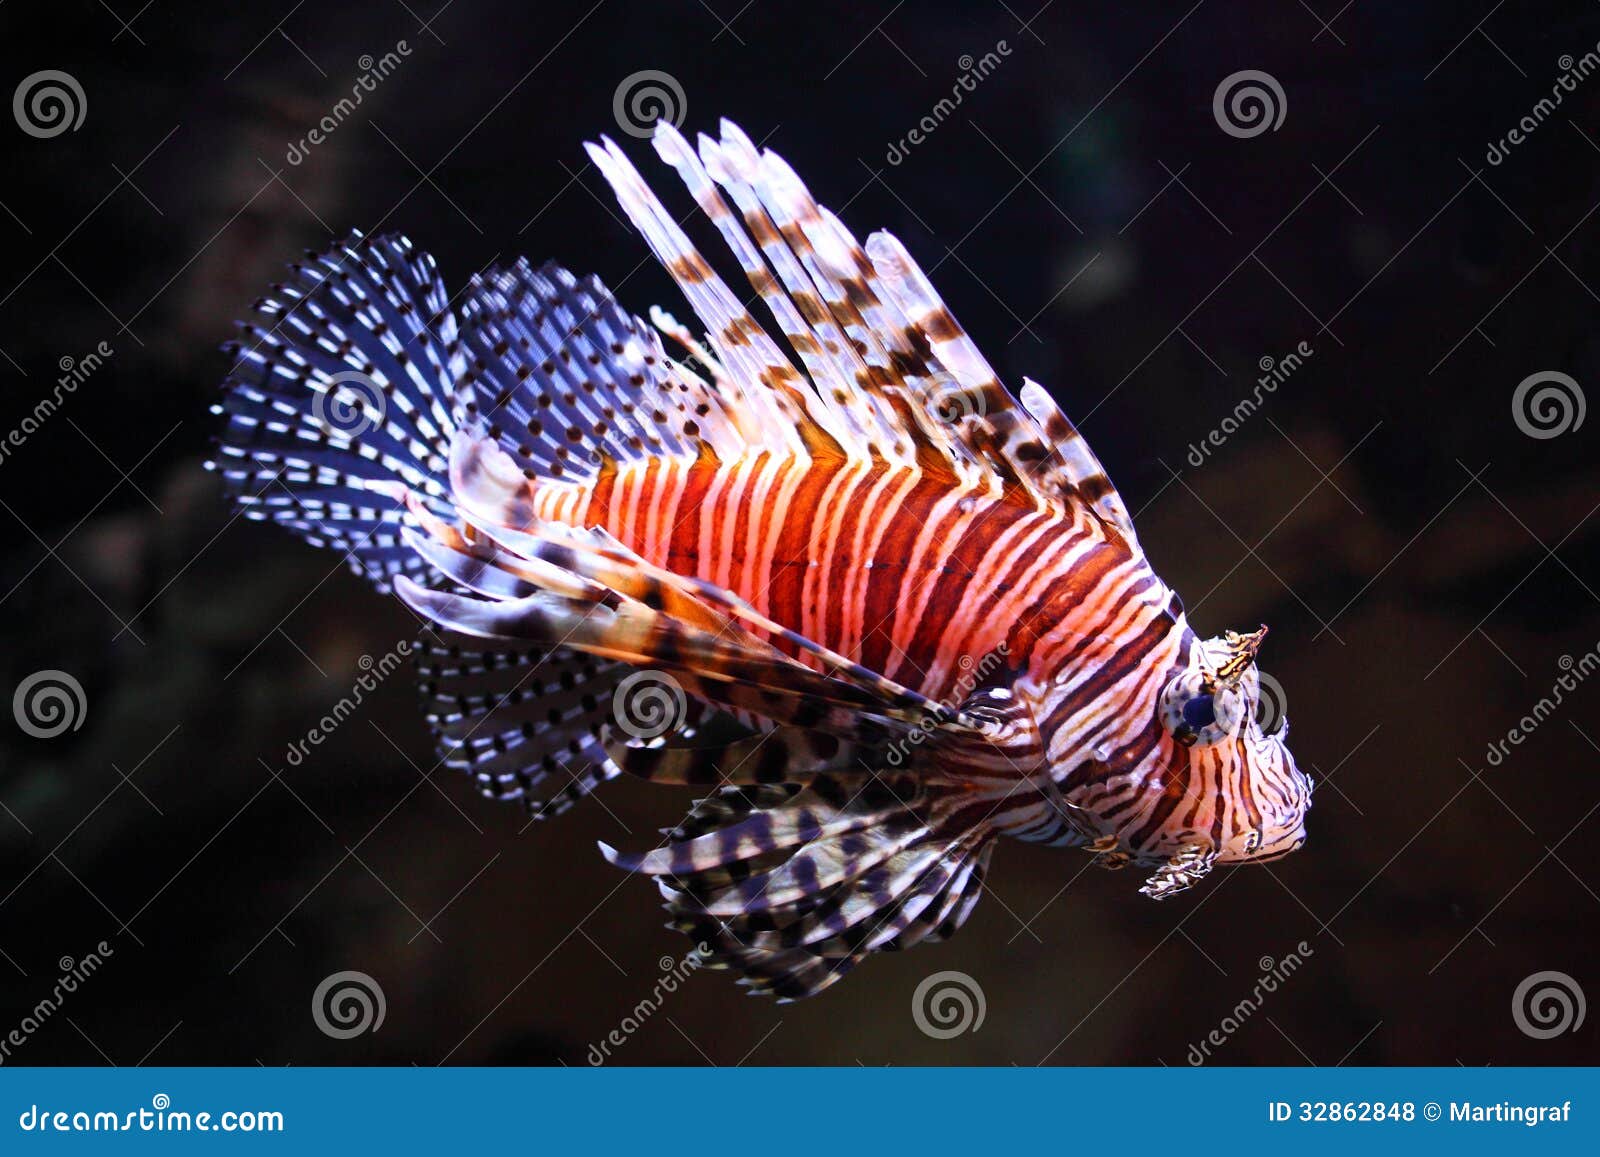 red lionfish illuminated in aquarium